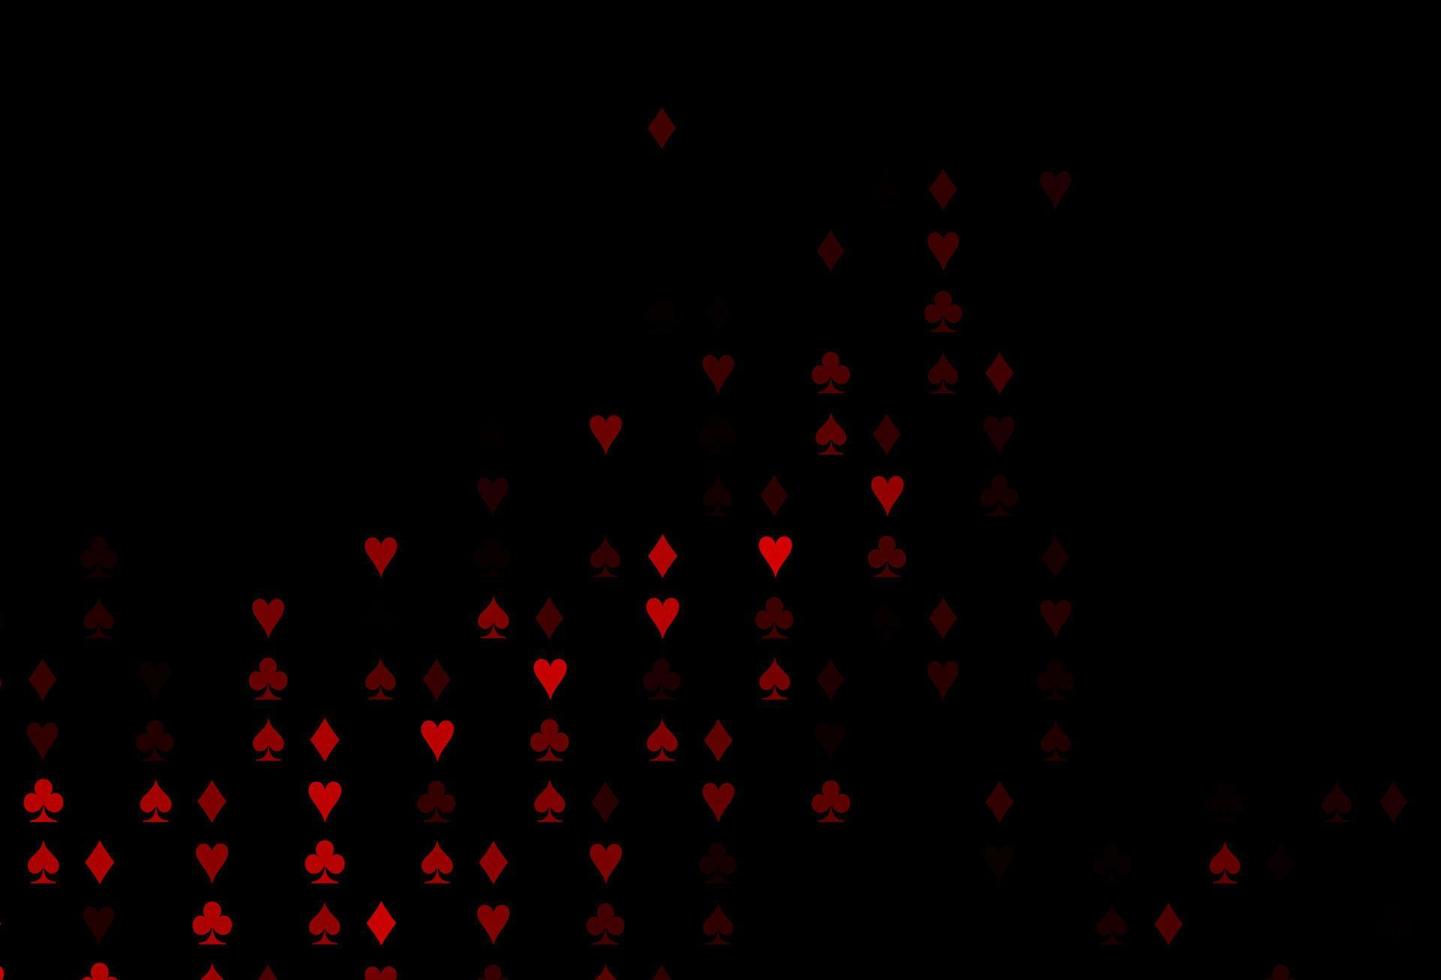 copertina vettoriale rosso scuro con simboli di gioco d'azzardo.